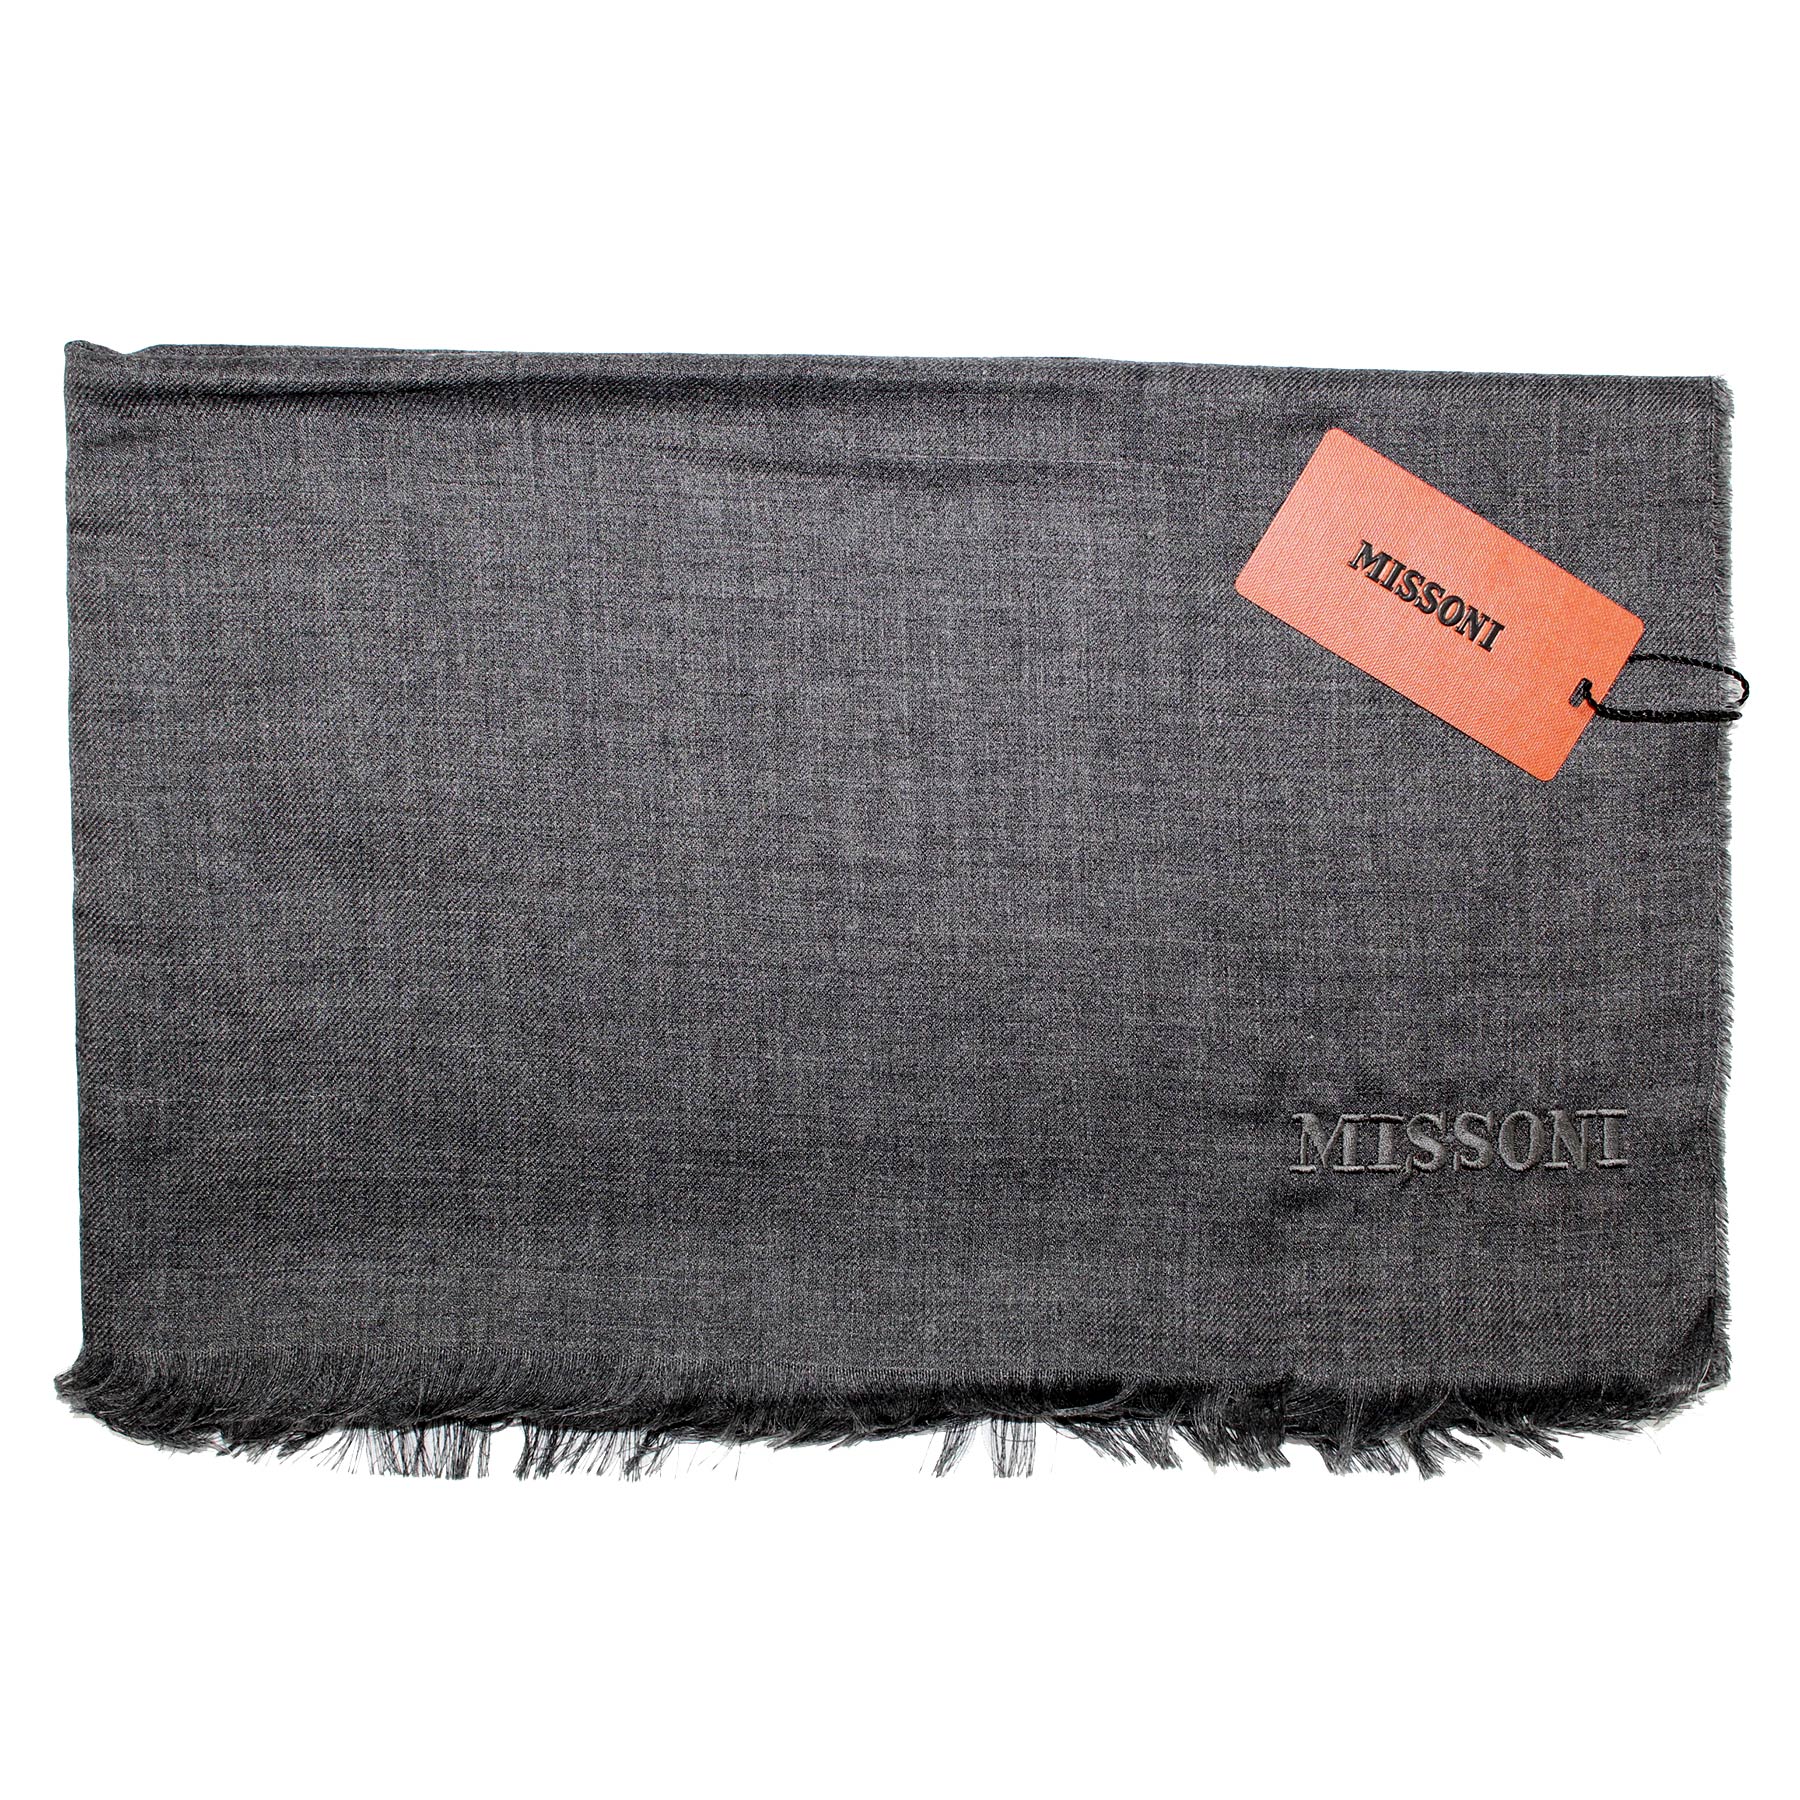 Missoni Scarf Charcoal Gray - Alpaca Silk Designer Shawl BLACK FRIDAY SALE